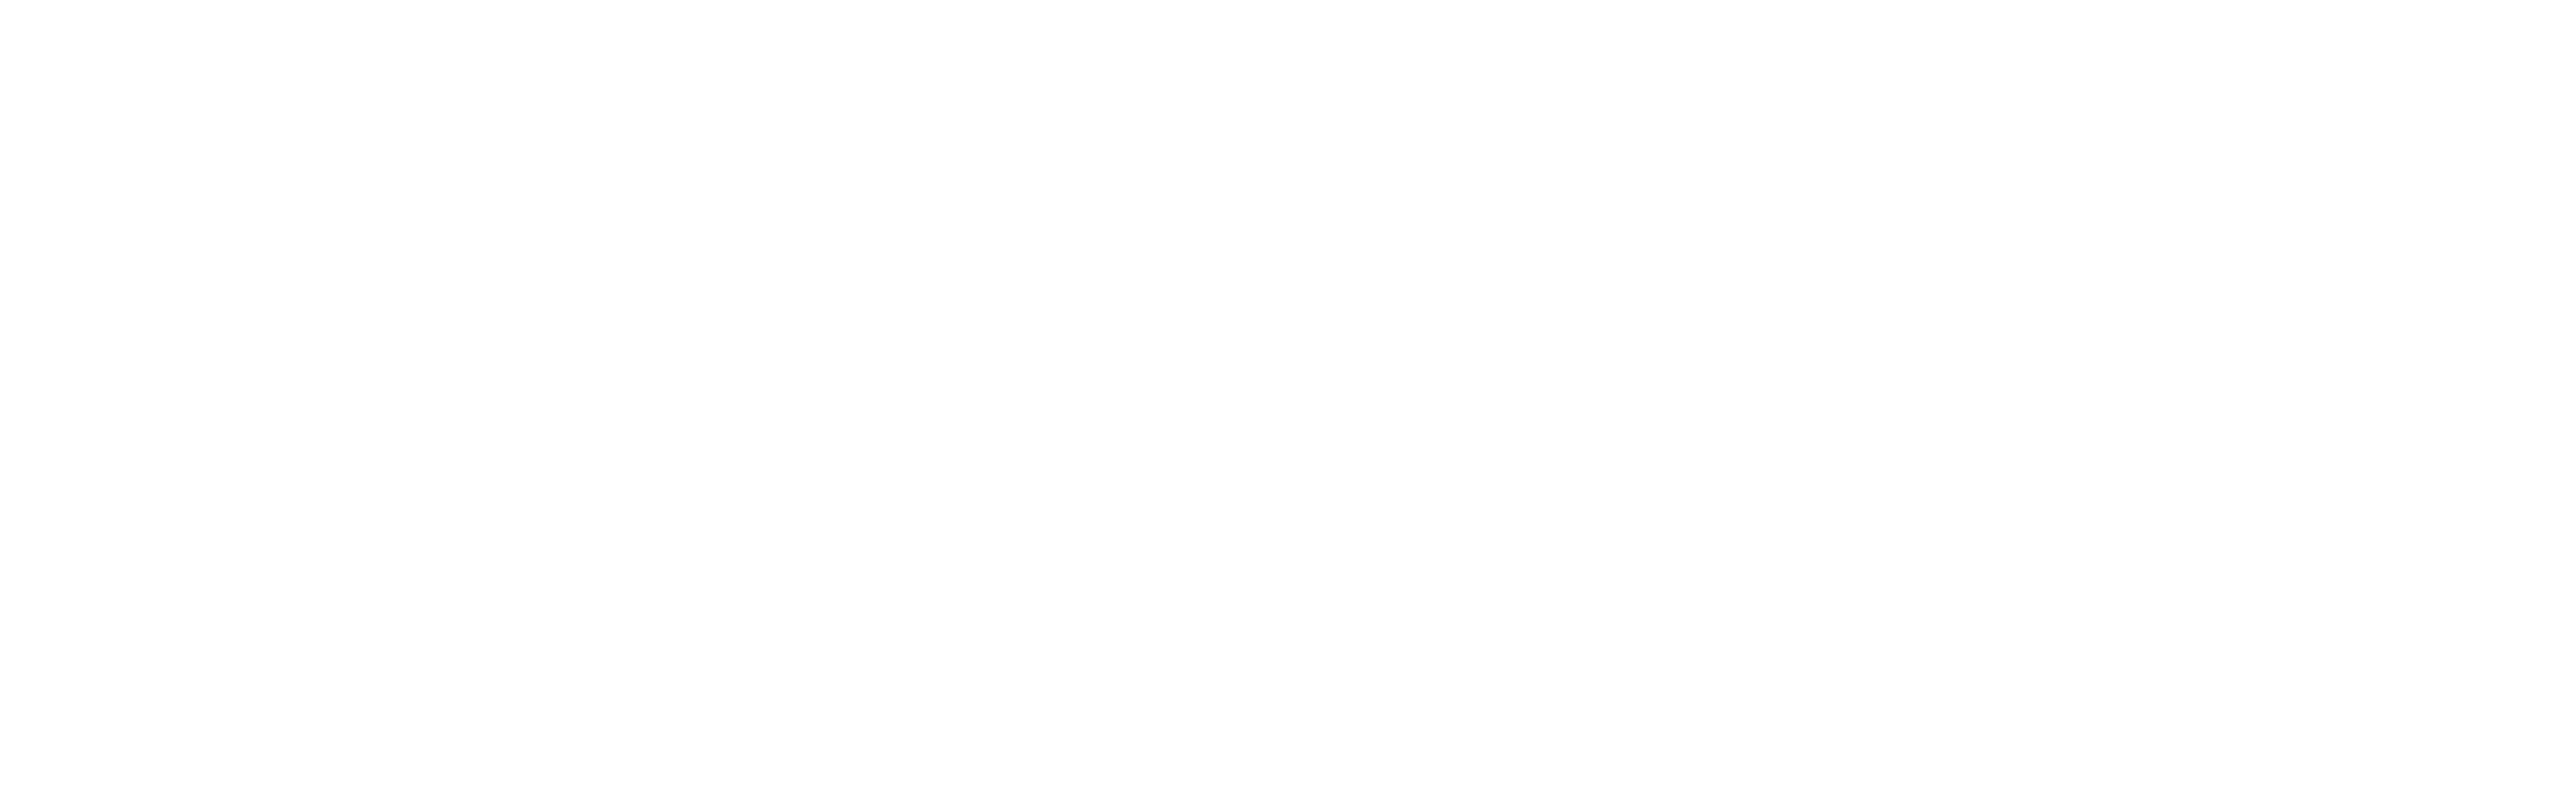 teamwork clipart church leadership